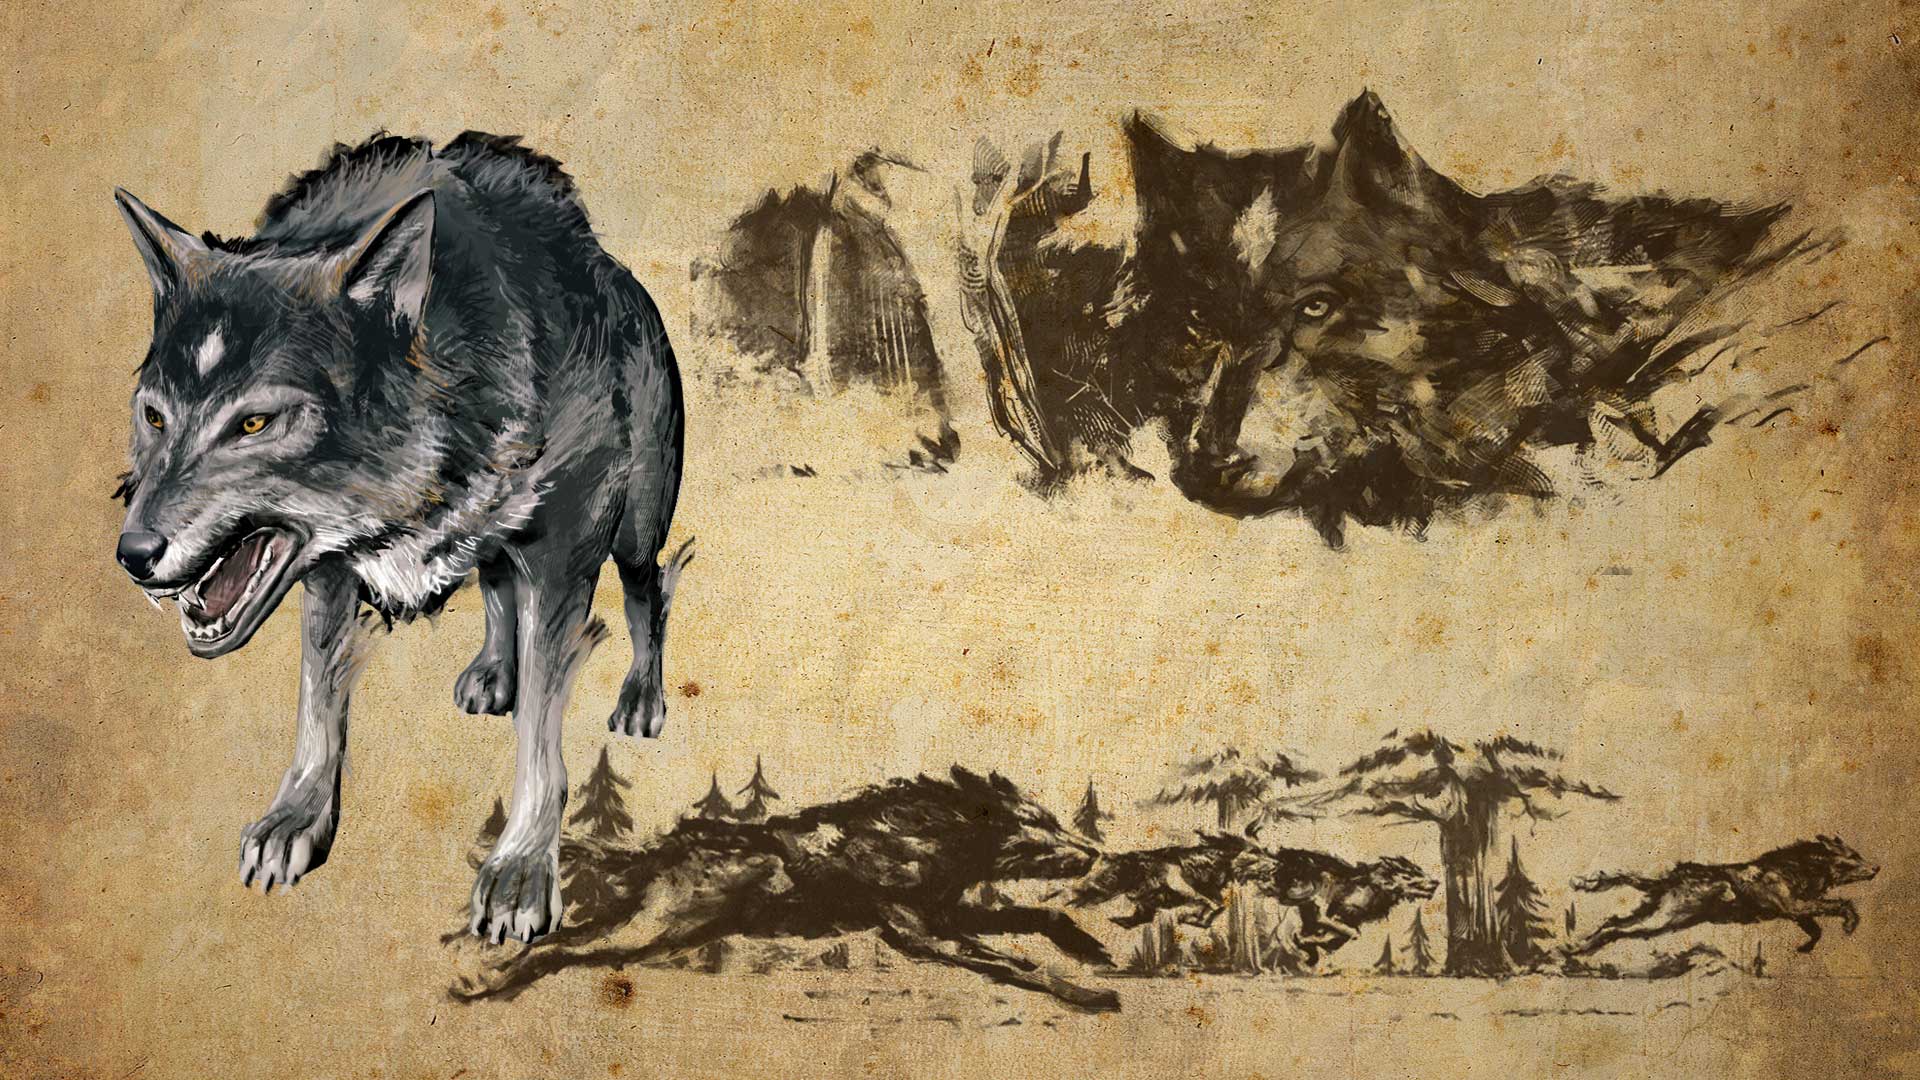 Популярные заставки и фоны «Одинокий Волк» Джо Девера Hd Ремастеринг на компьютер